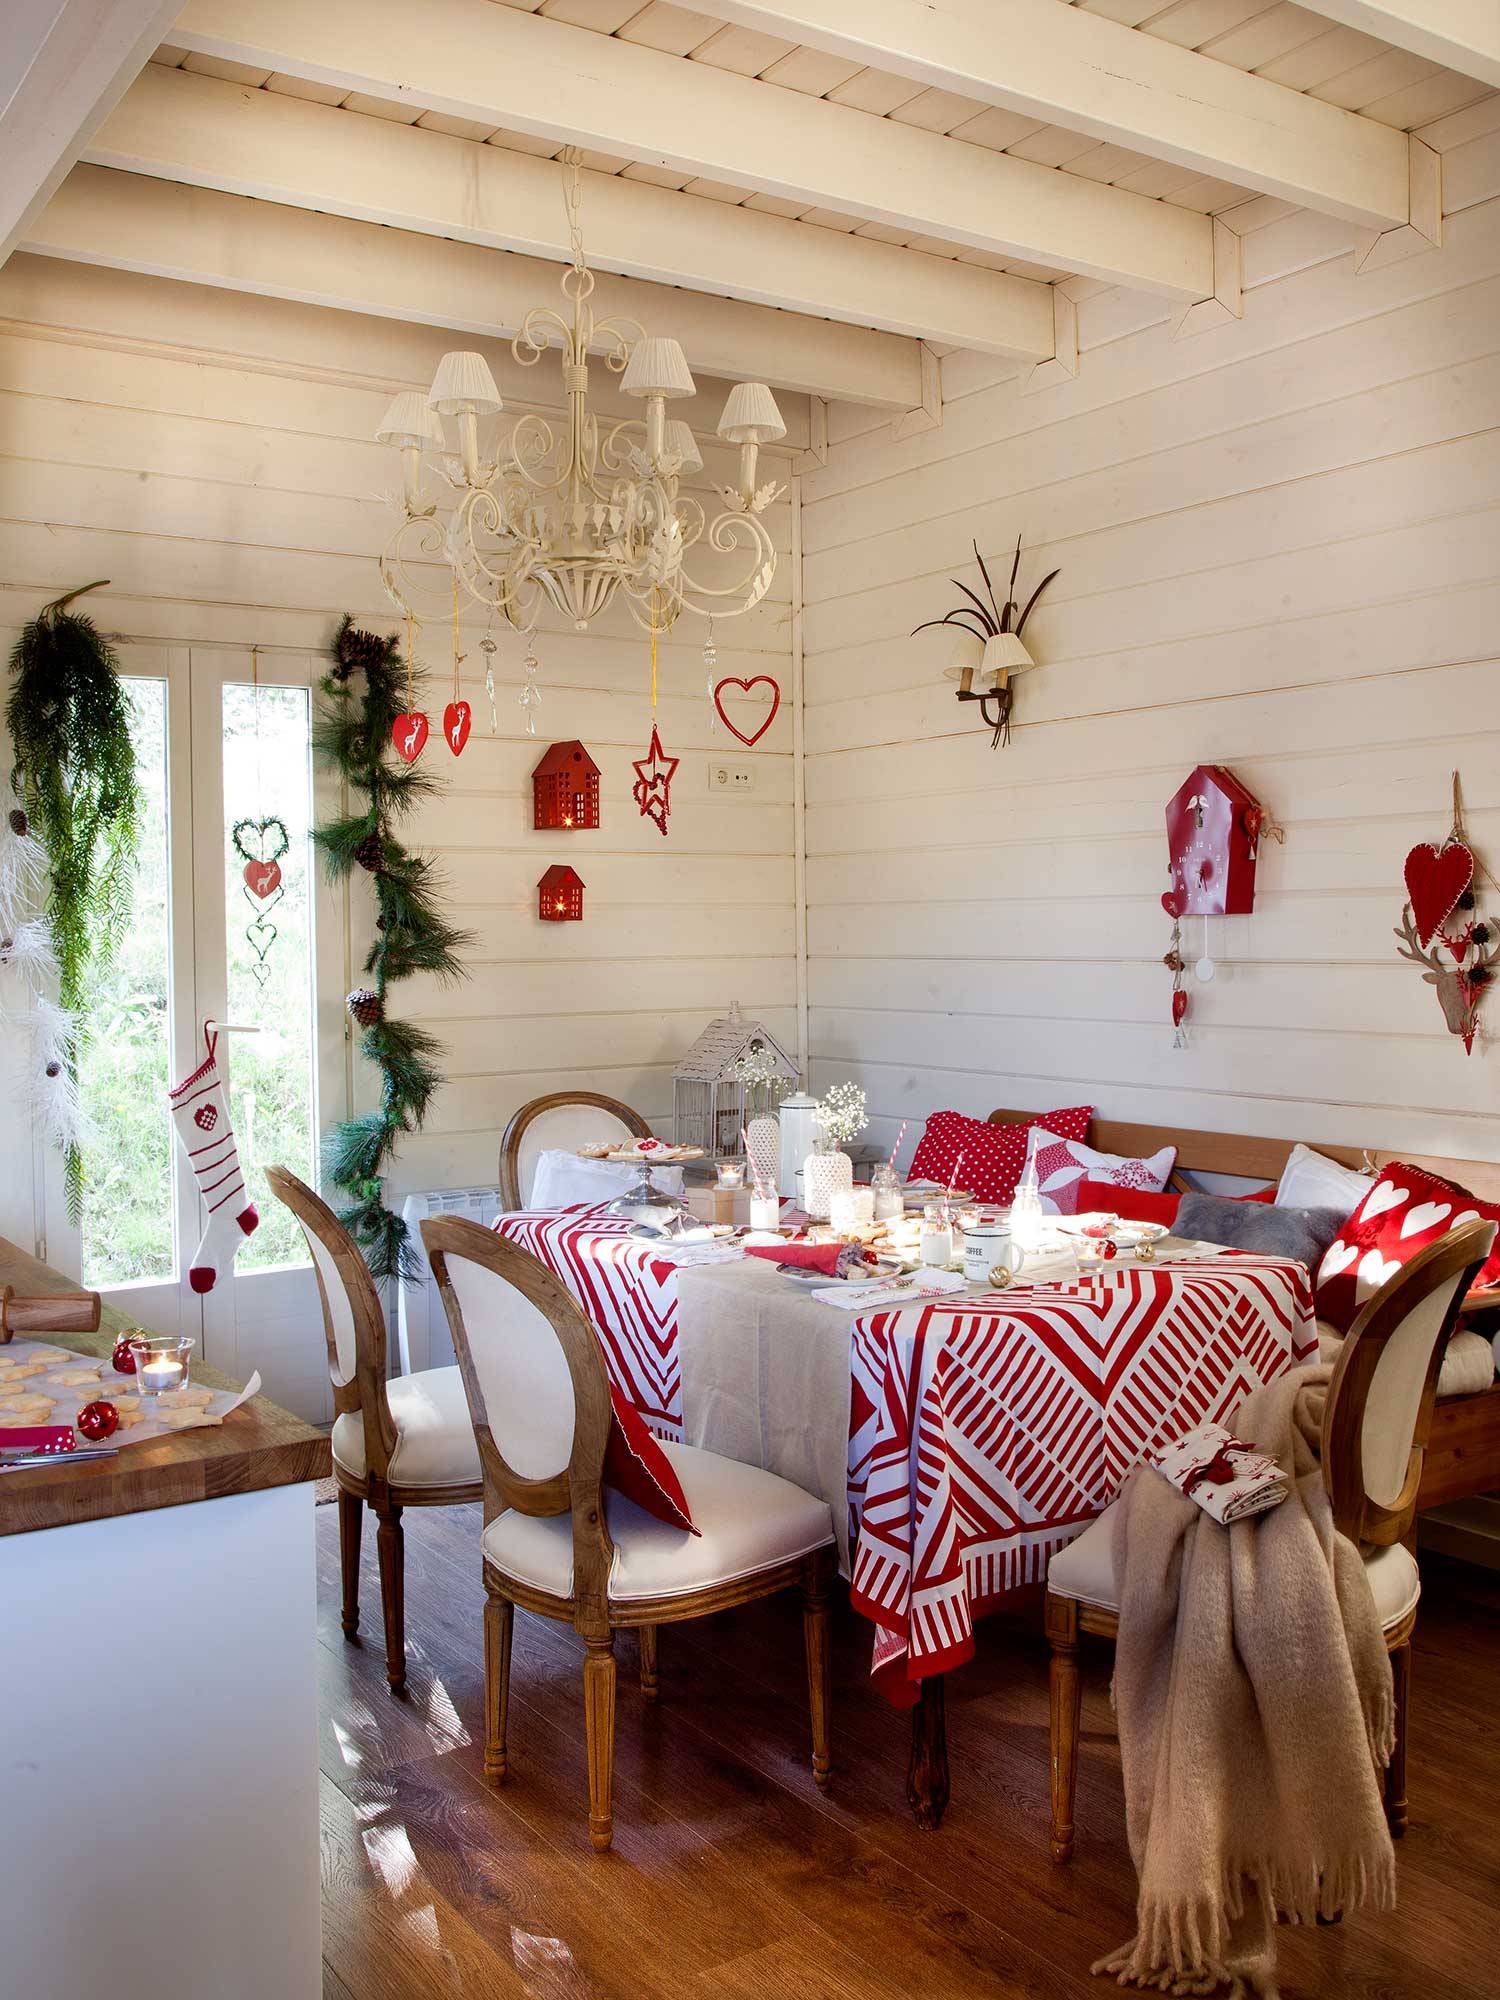 Comedor vestido de Navidad en blanco y rojo_00374320 O